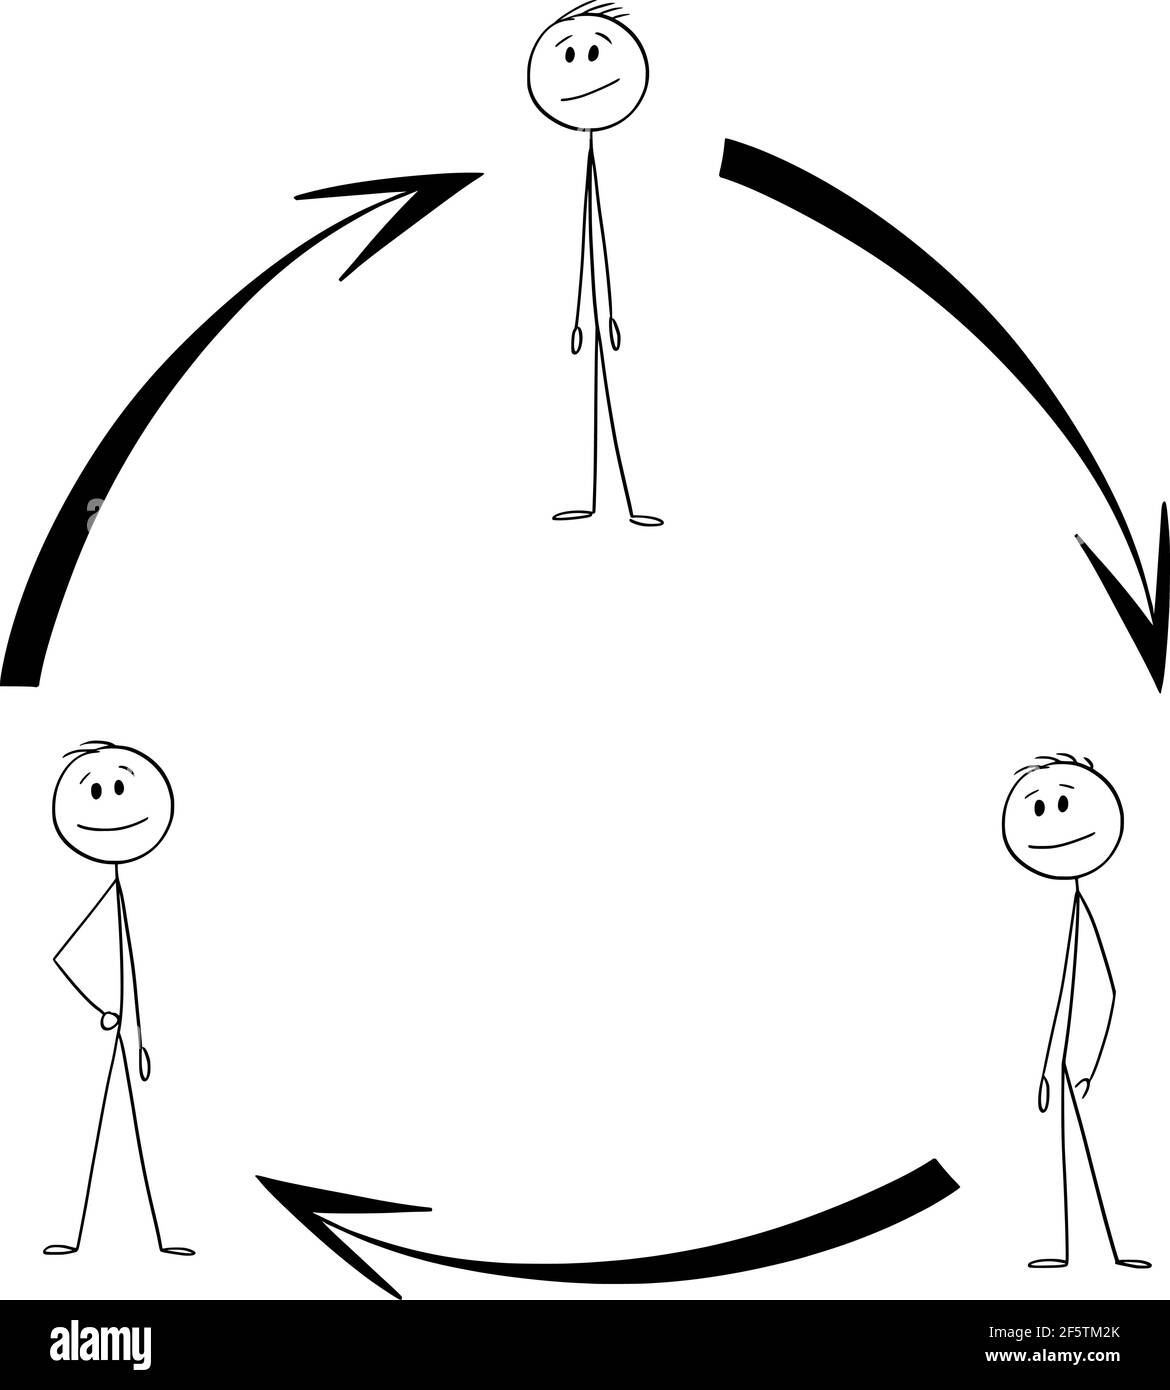 Schema der Team- oder Teamarbeit Zusammenarbeit, Pfeile im Kreis, Vektor Cartoon Stick Figur Illustration Stock Vektor